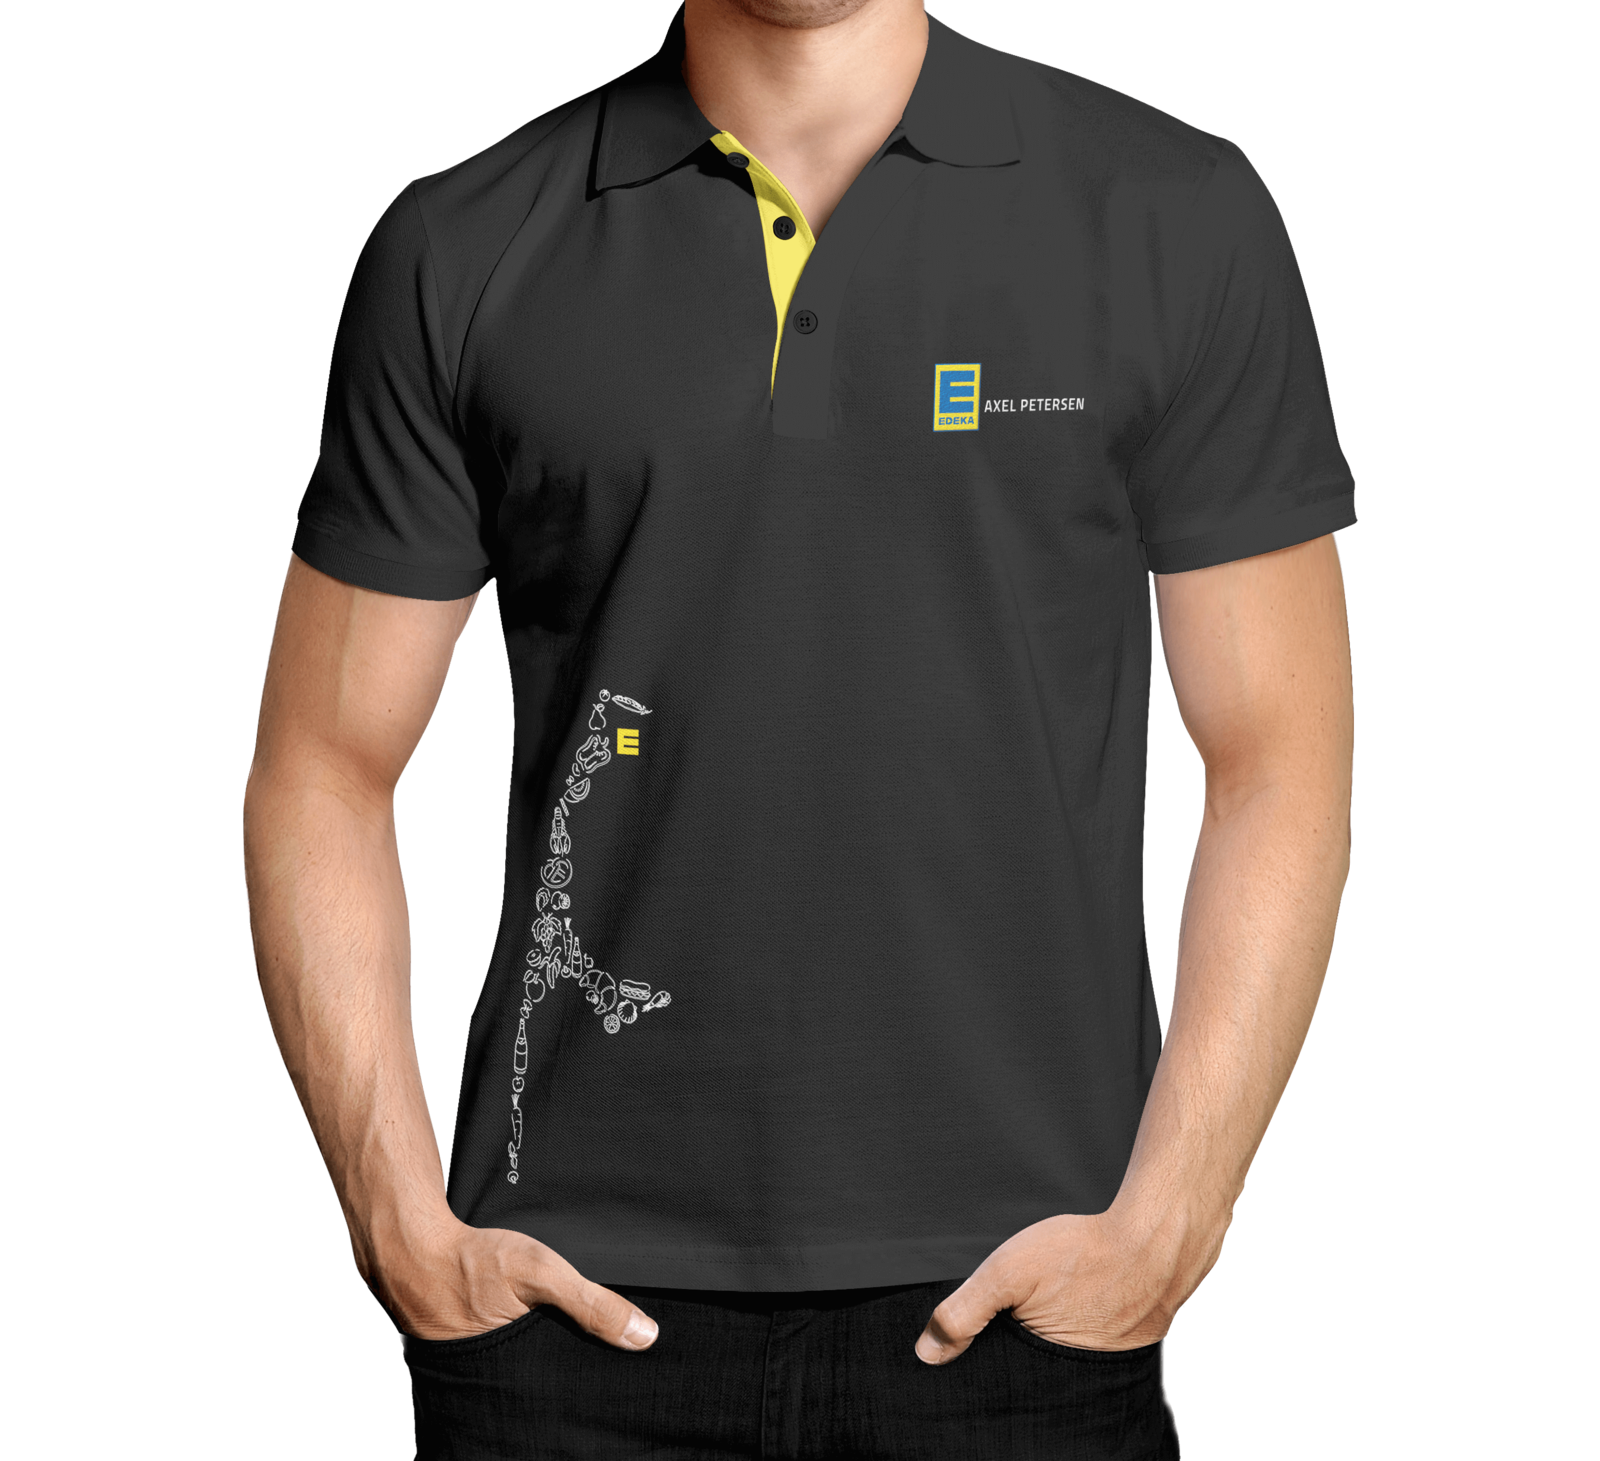 Schwarzes Poloshirt mit gelben Druck von Edeka Sylt mit Inselsilouette